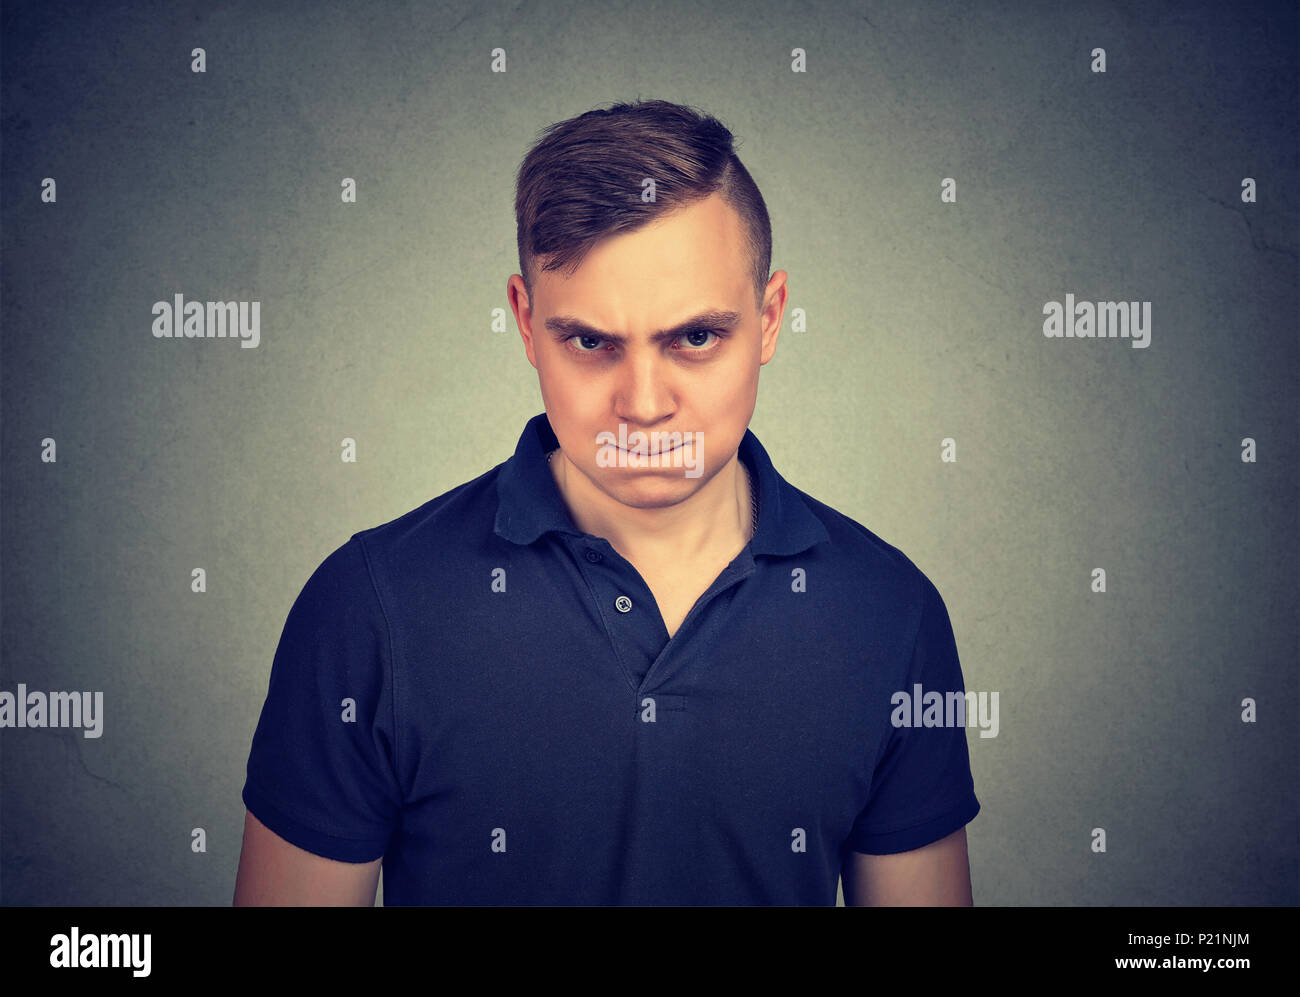 Angry man looking at camera Stock Photo